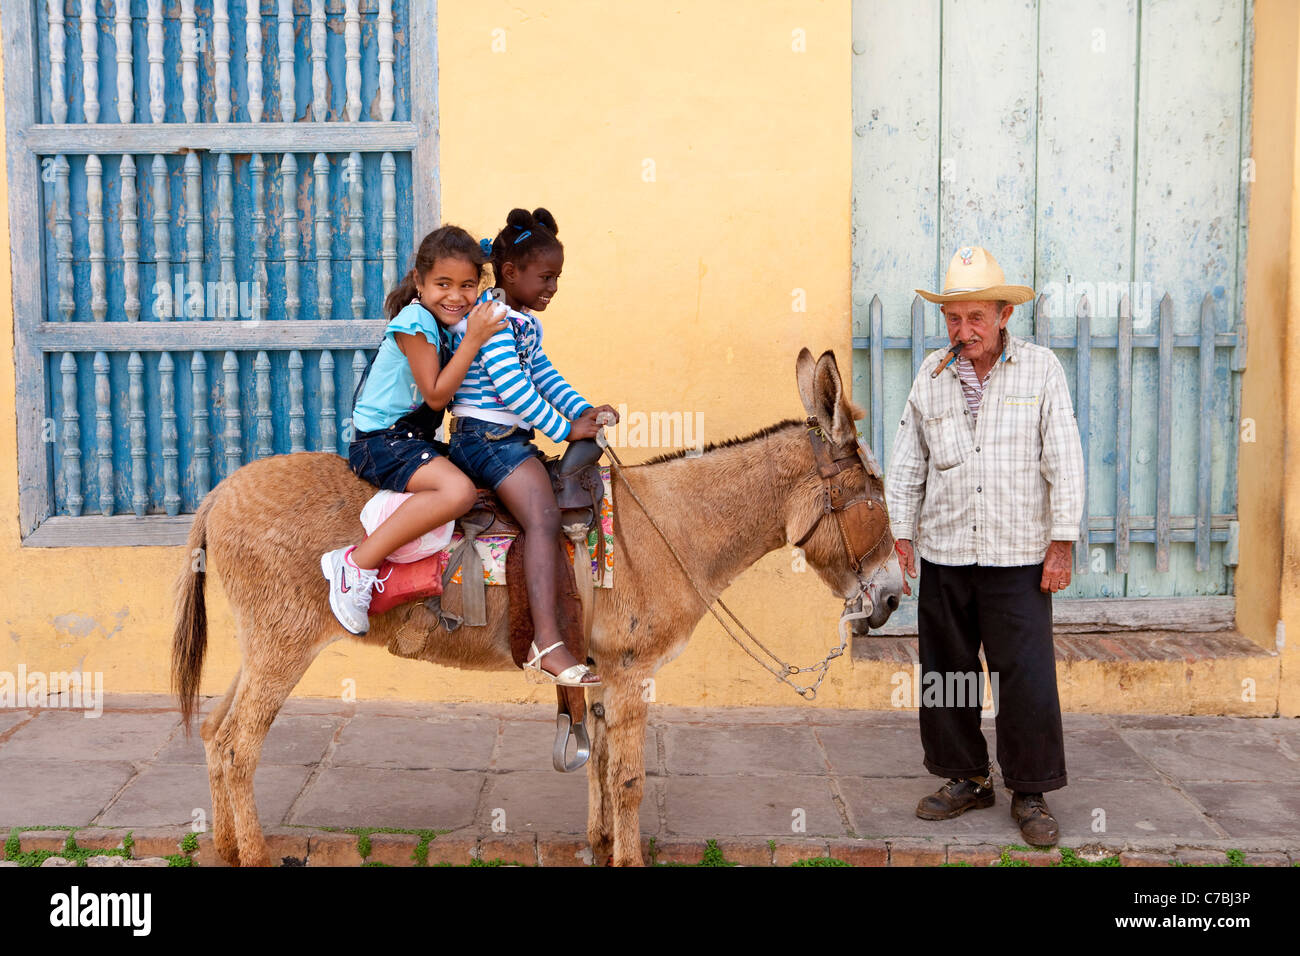 Oportunidad fotográfica, Felices los Niños sentados en un burro, Trinidad, Sancti Spíritus, Cuba, El Caribe Foto de stock